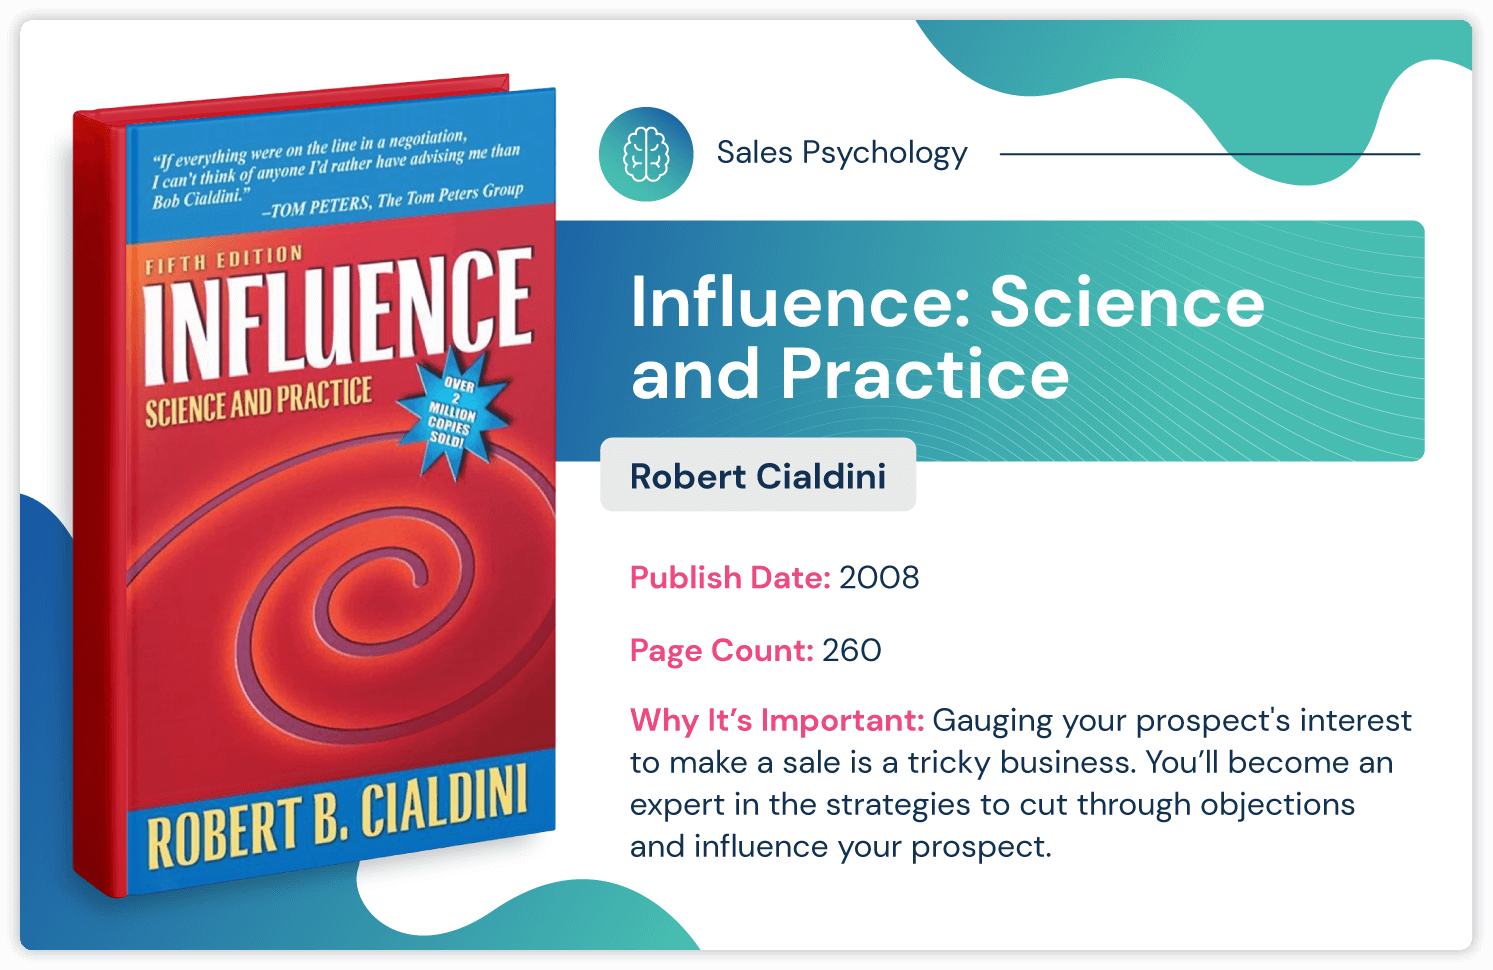 Cartea de psihologie a vânzărilor numită „Influență: Știință și practică” de Robert Cialdini despre cum să influențezi cu strategia de vânzări; publicat în 2008 și 260 de pagini.